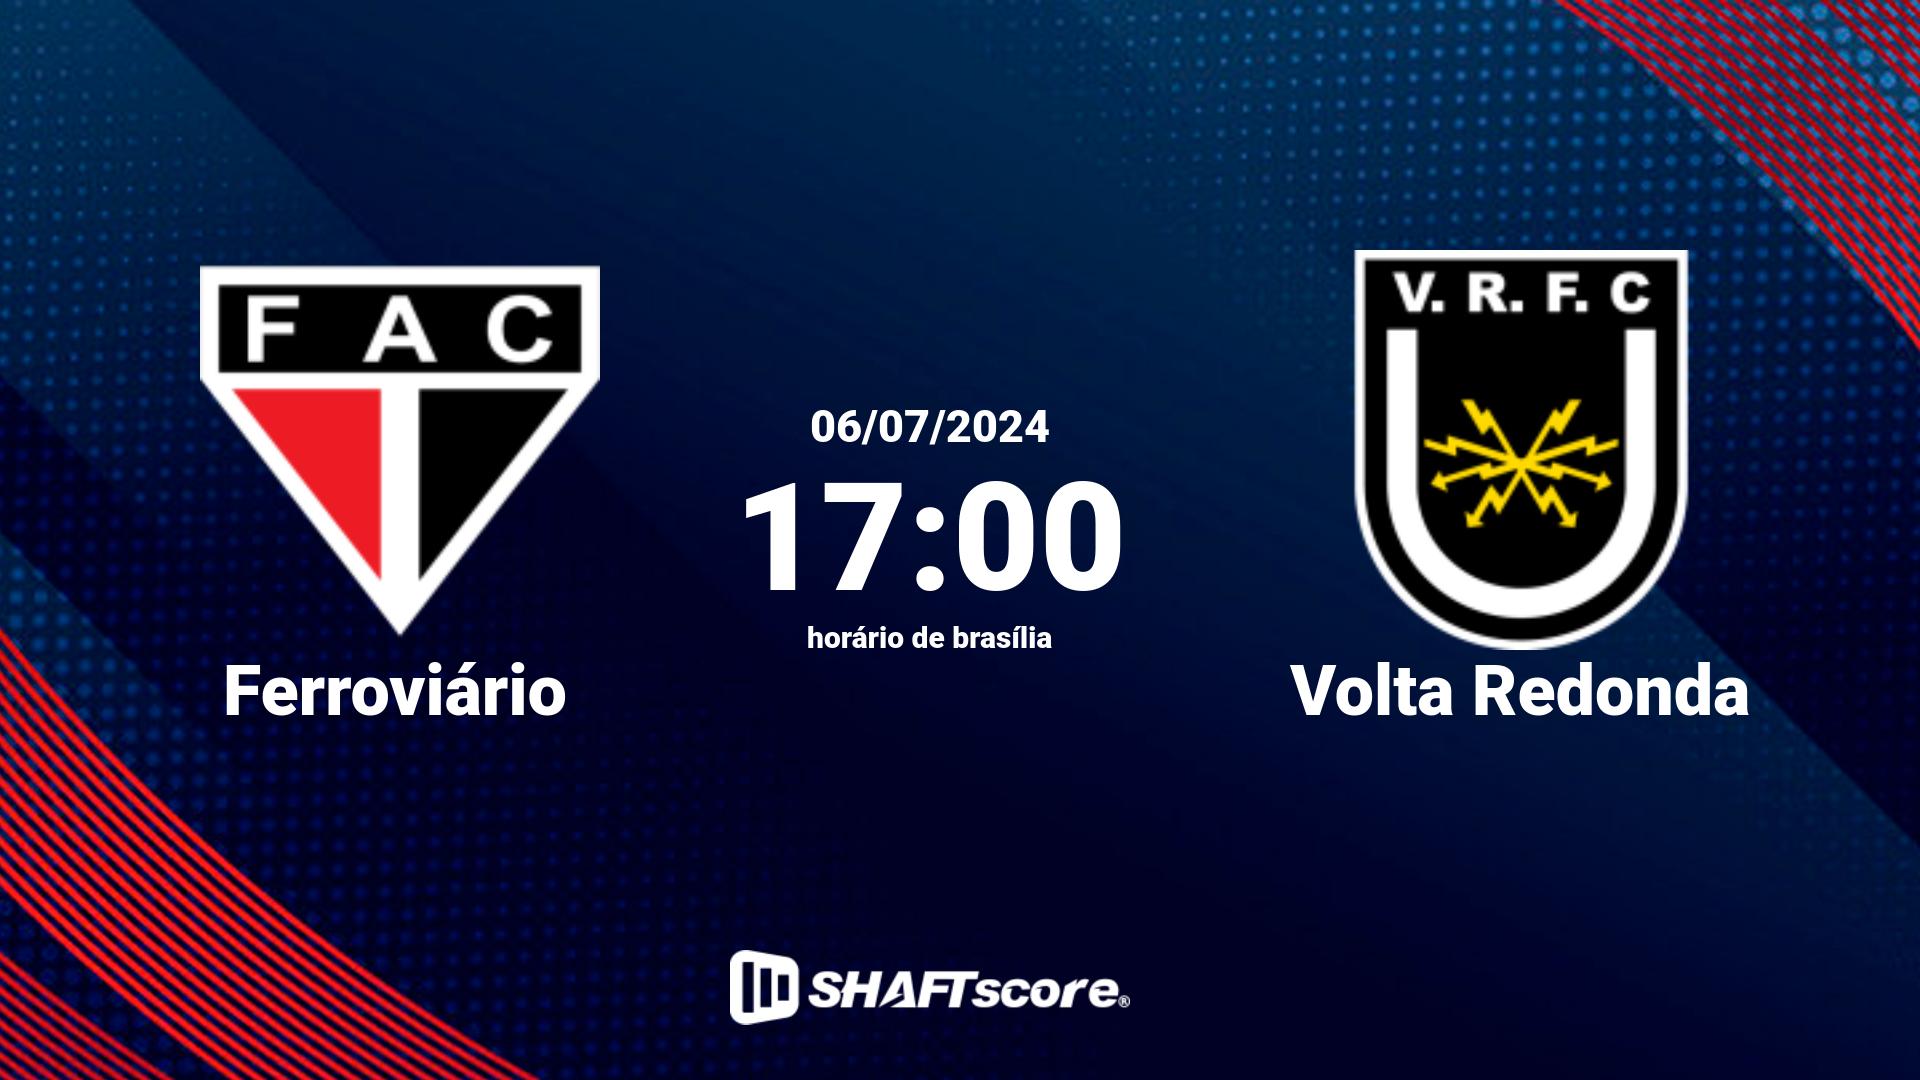 Estatísticas do jogo Ferroviário vs Volta Redonda 06.07 17:00